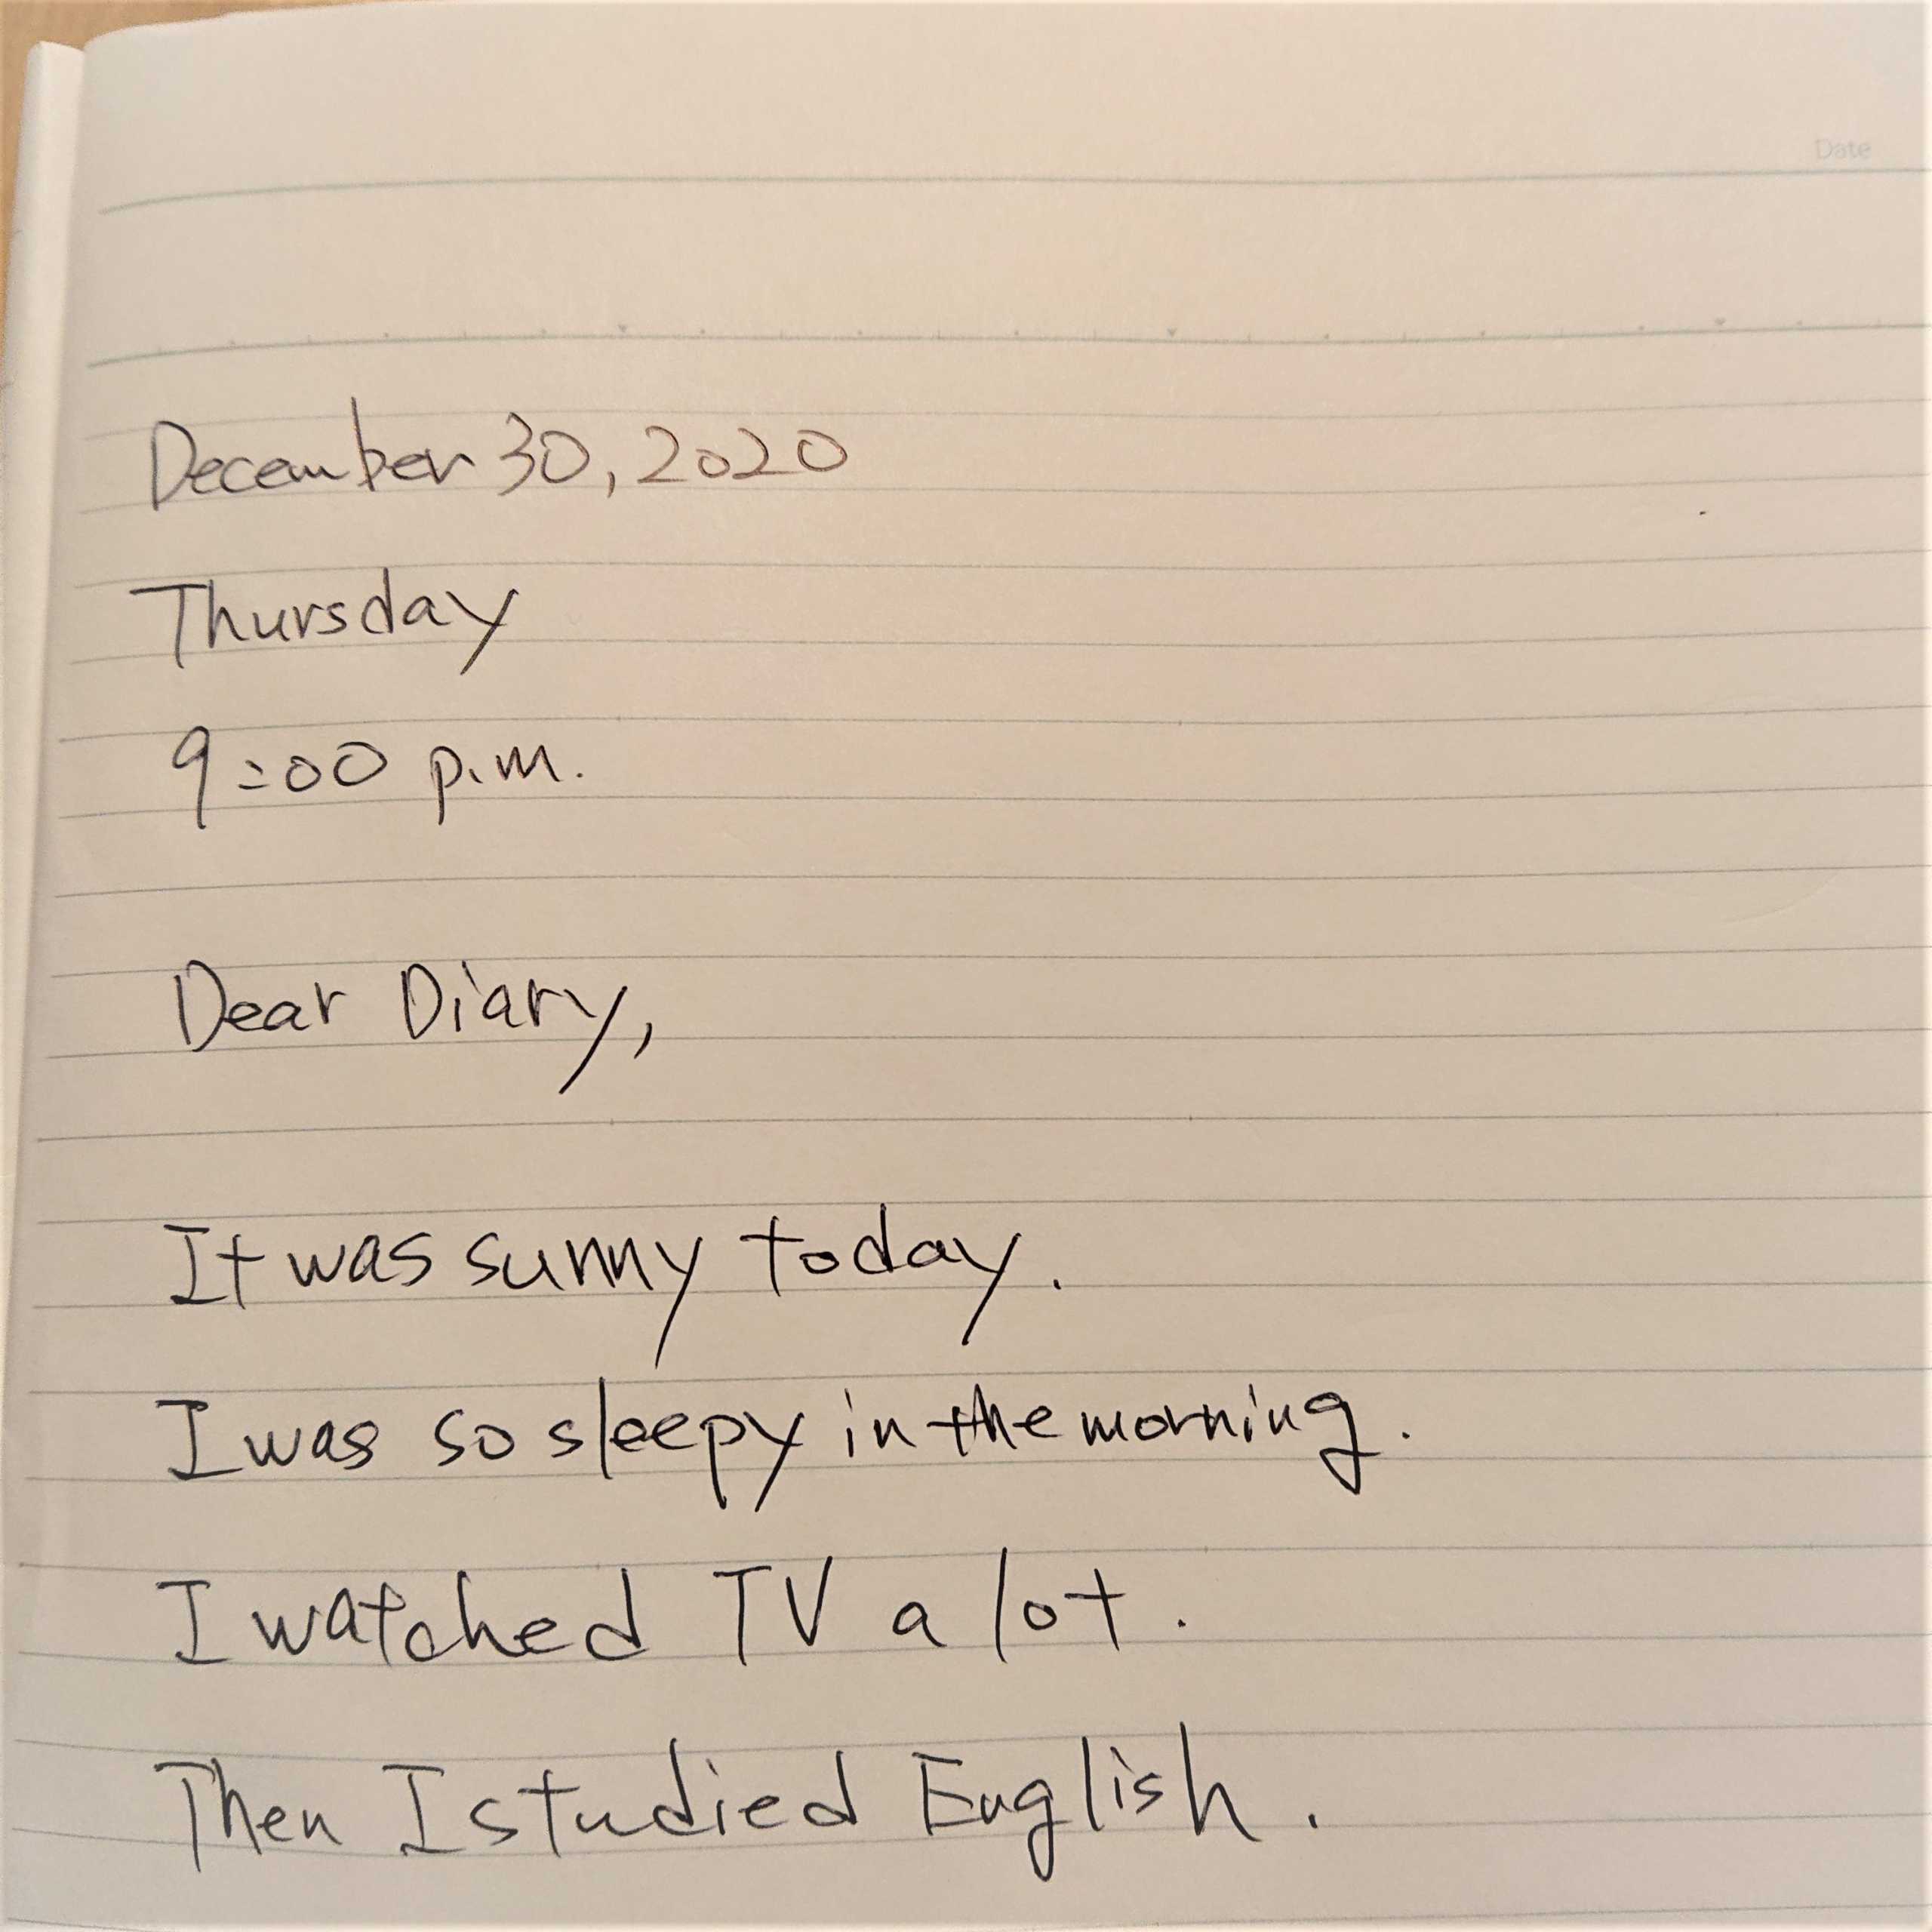 英語の日記はノートに書いた方がいい 2つの方法と実例画像など マイスキ英語